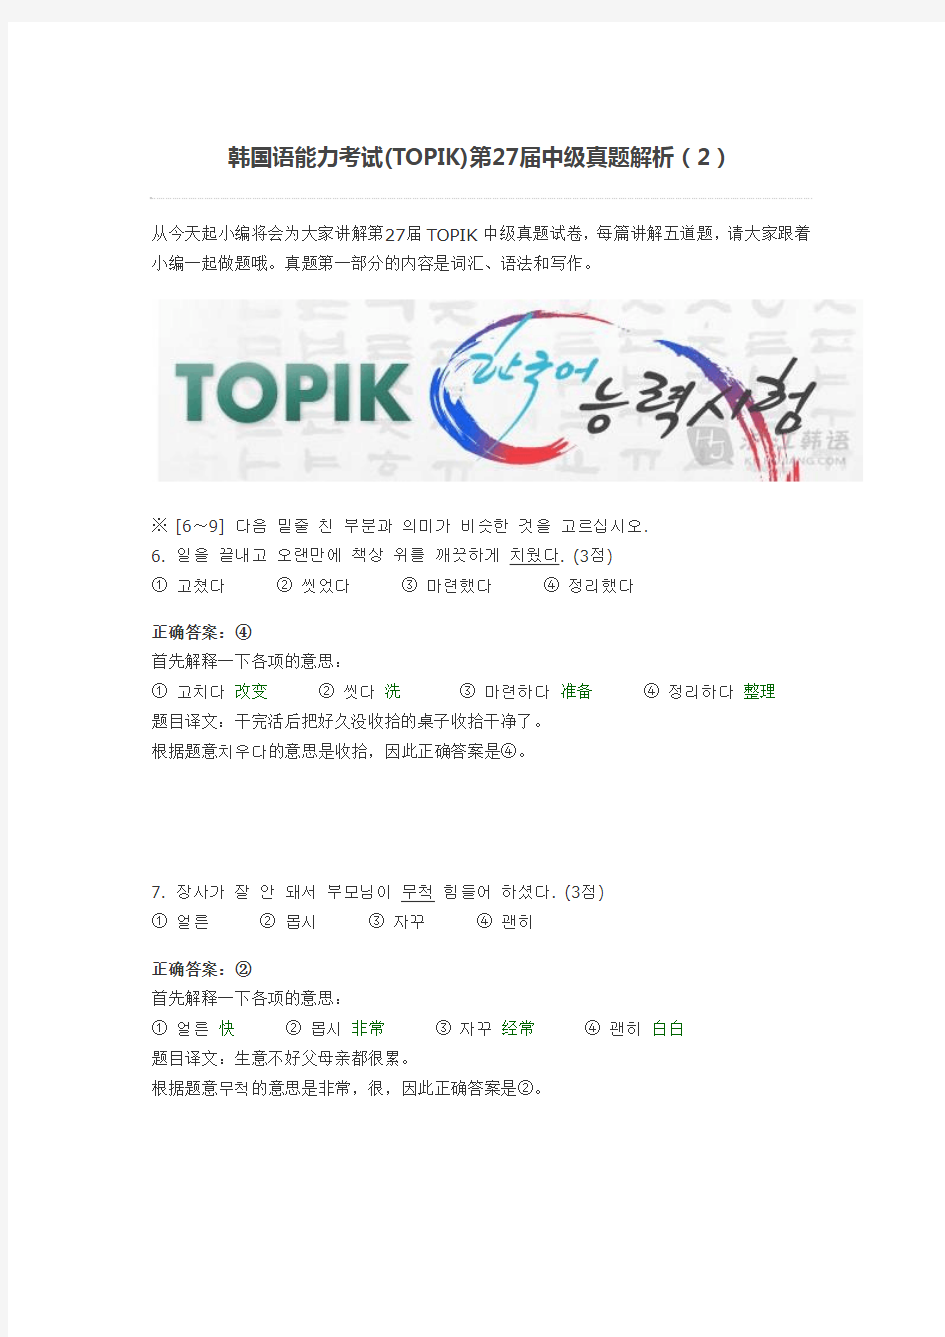 韩国语能力考试(TOPIK)第27届中级真题解析(2)